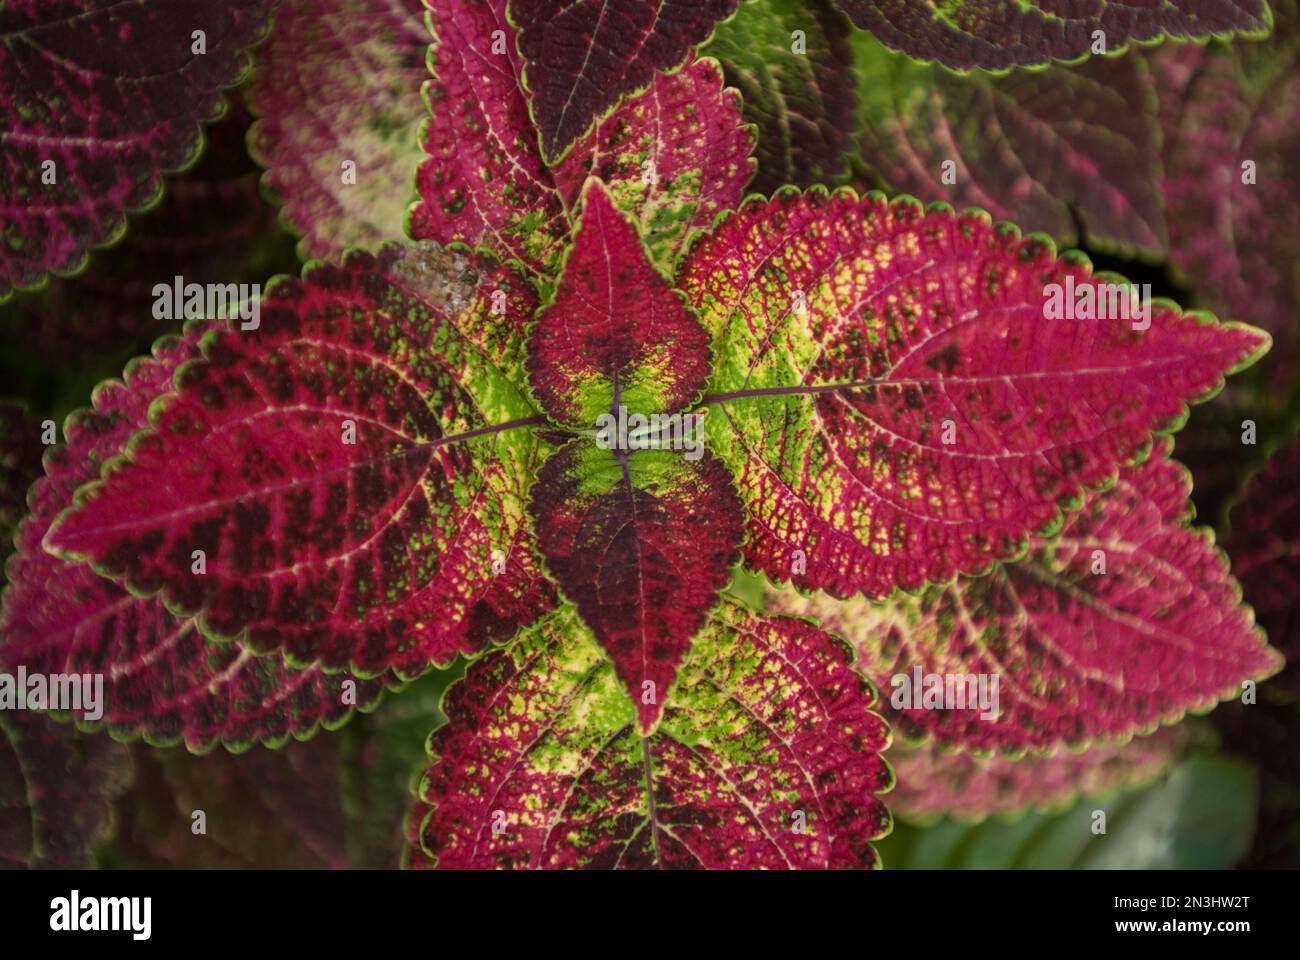 Nahaufnahme einer blühenden Coleus-Pflanze mit roten und grünen Blättern; Lincoln, Nebraska, Vereinigte Staaten von Amerika Stockfoto